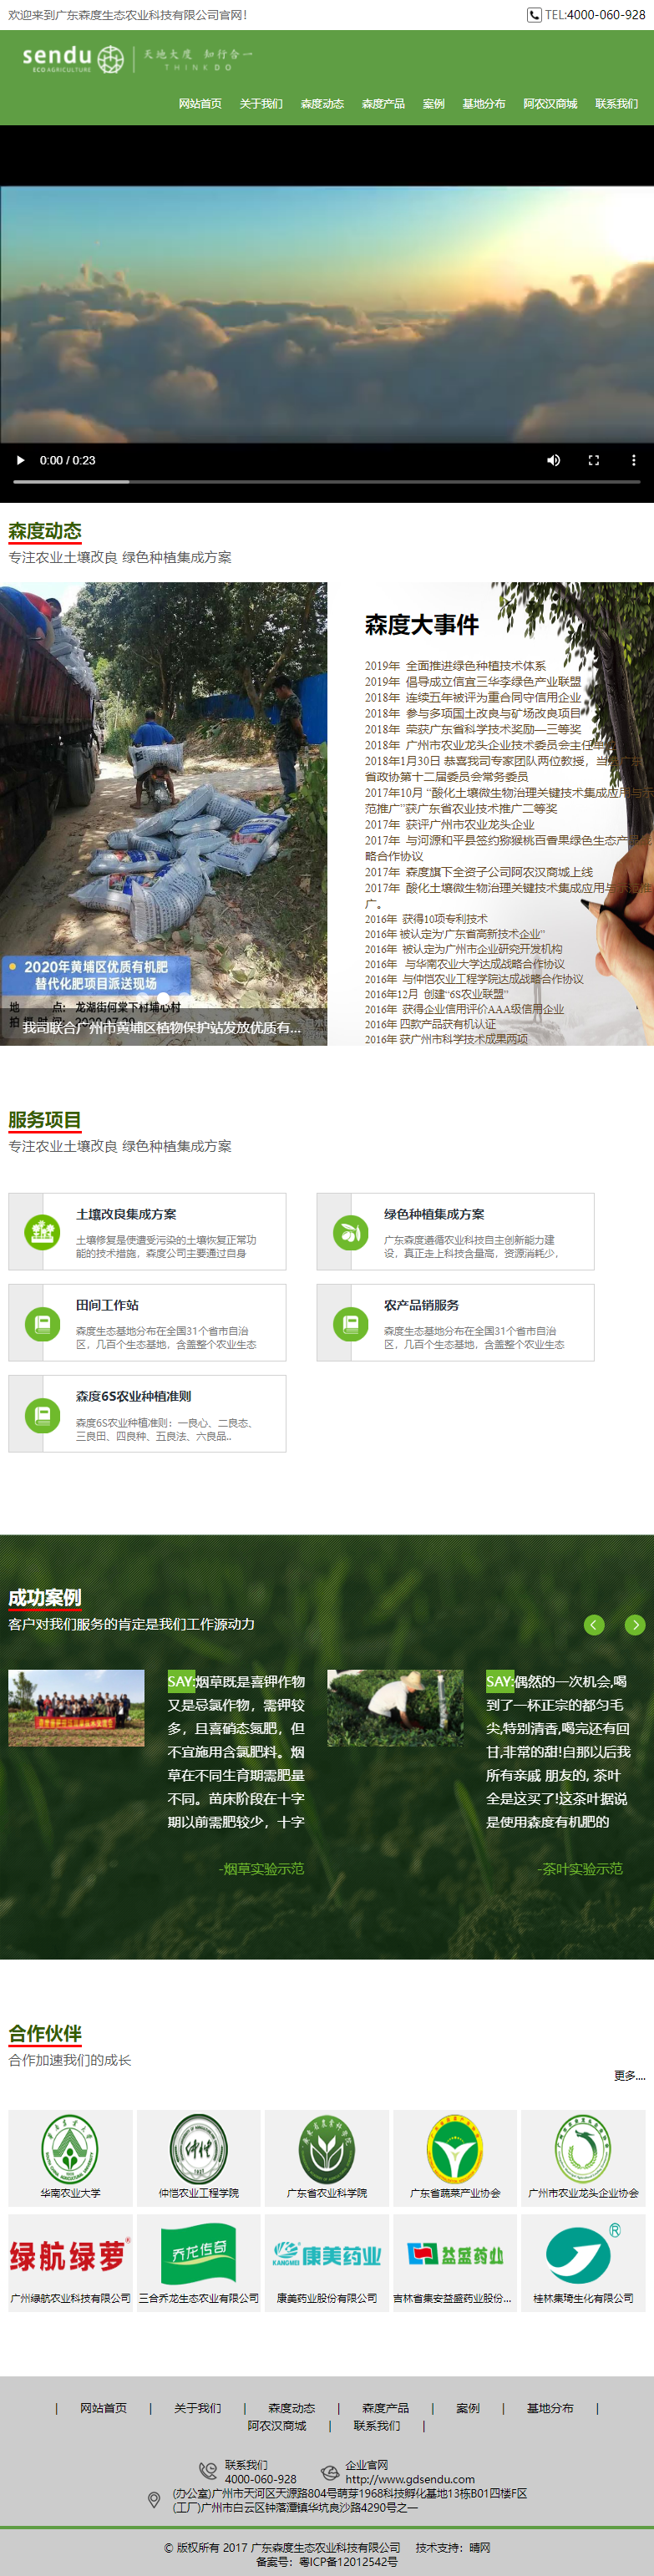 广东森度生态农业科技有限公司网站案例